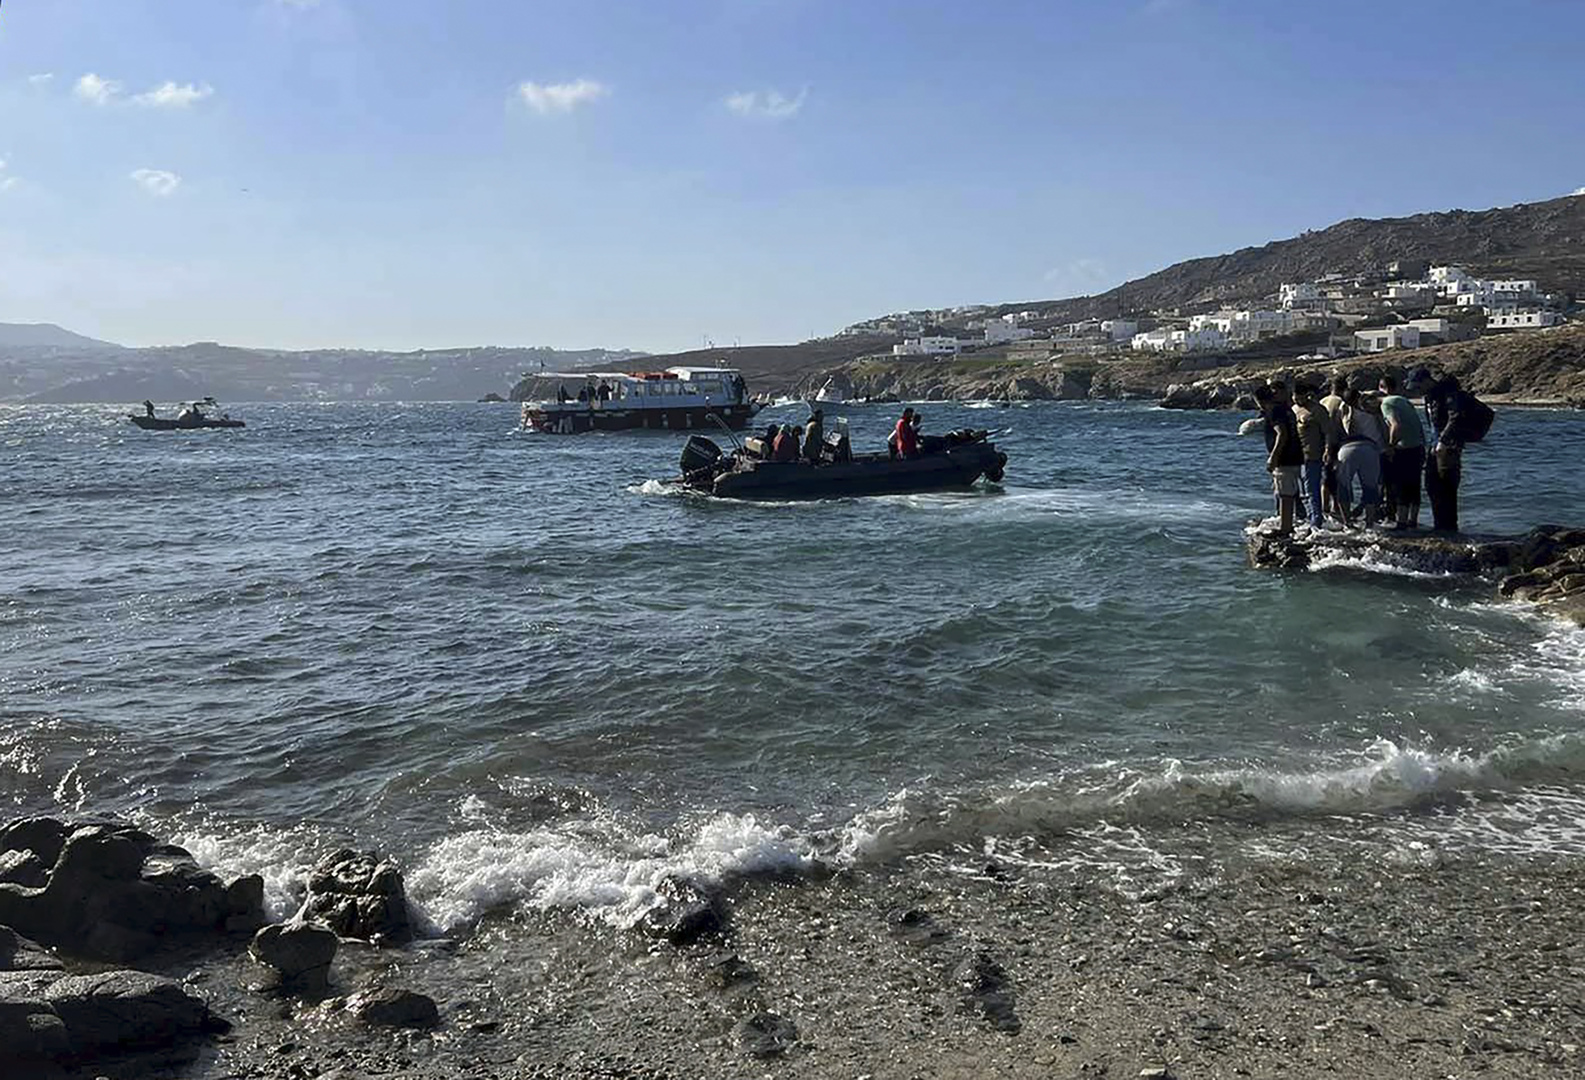 اليونان تتهم تركيا بمحاولة إرسال أكثر من 1000 مهاجر إليها وتؤكد إبعادهم 